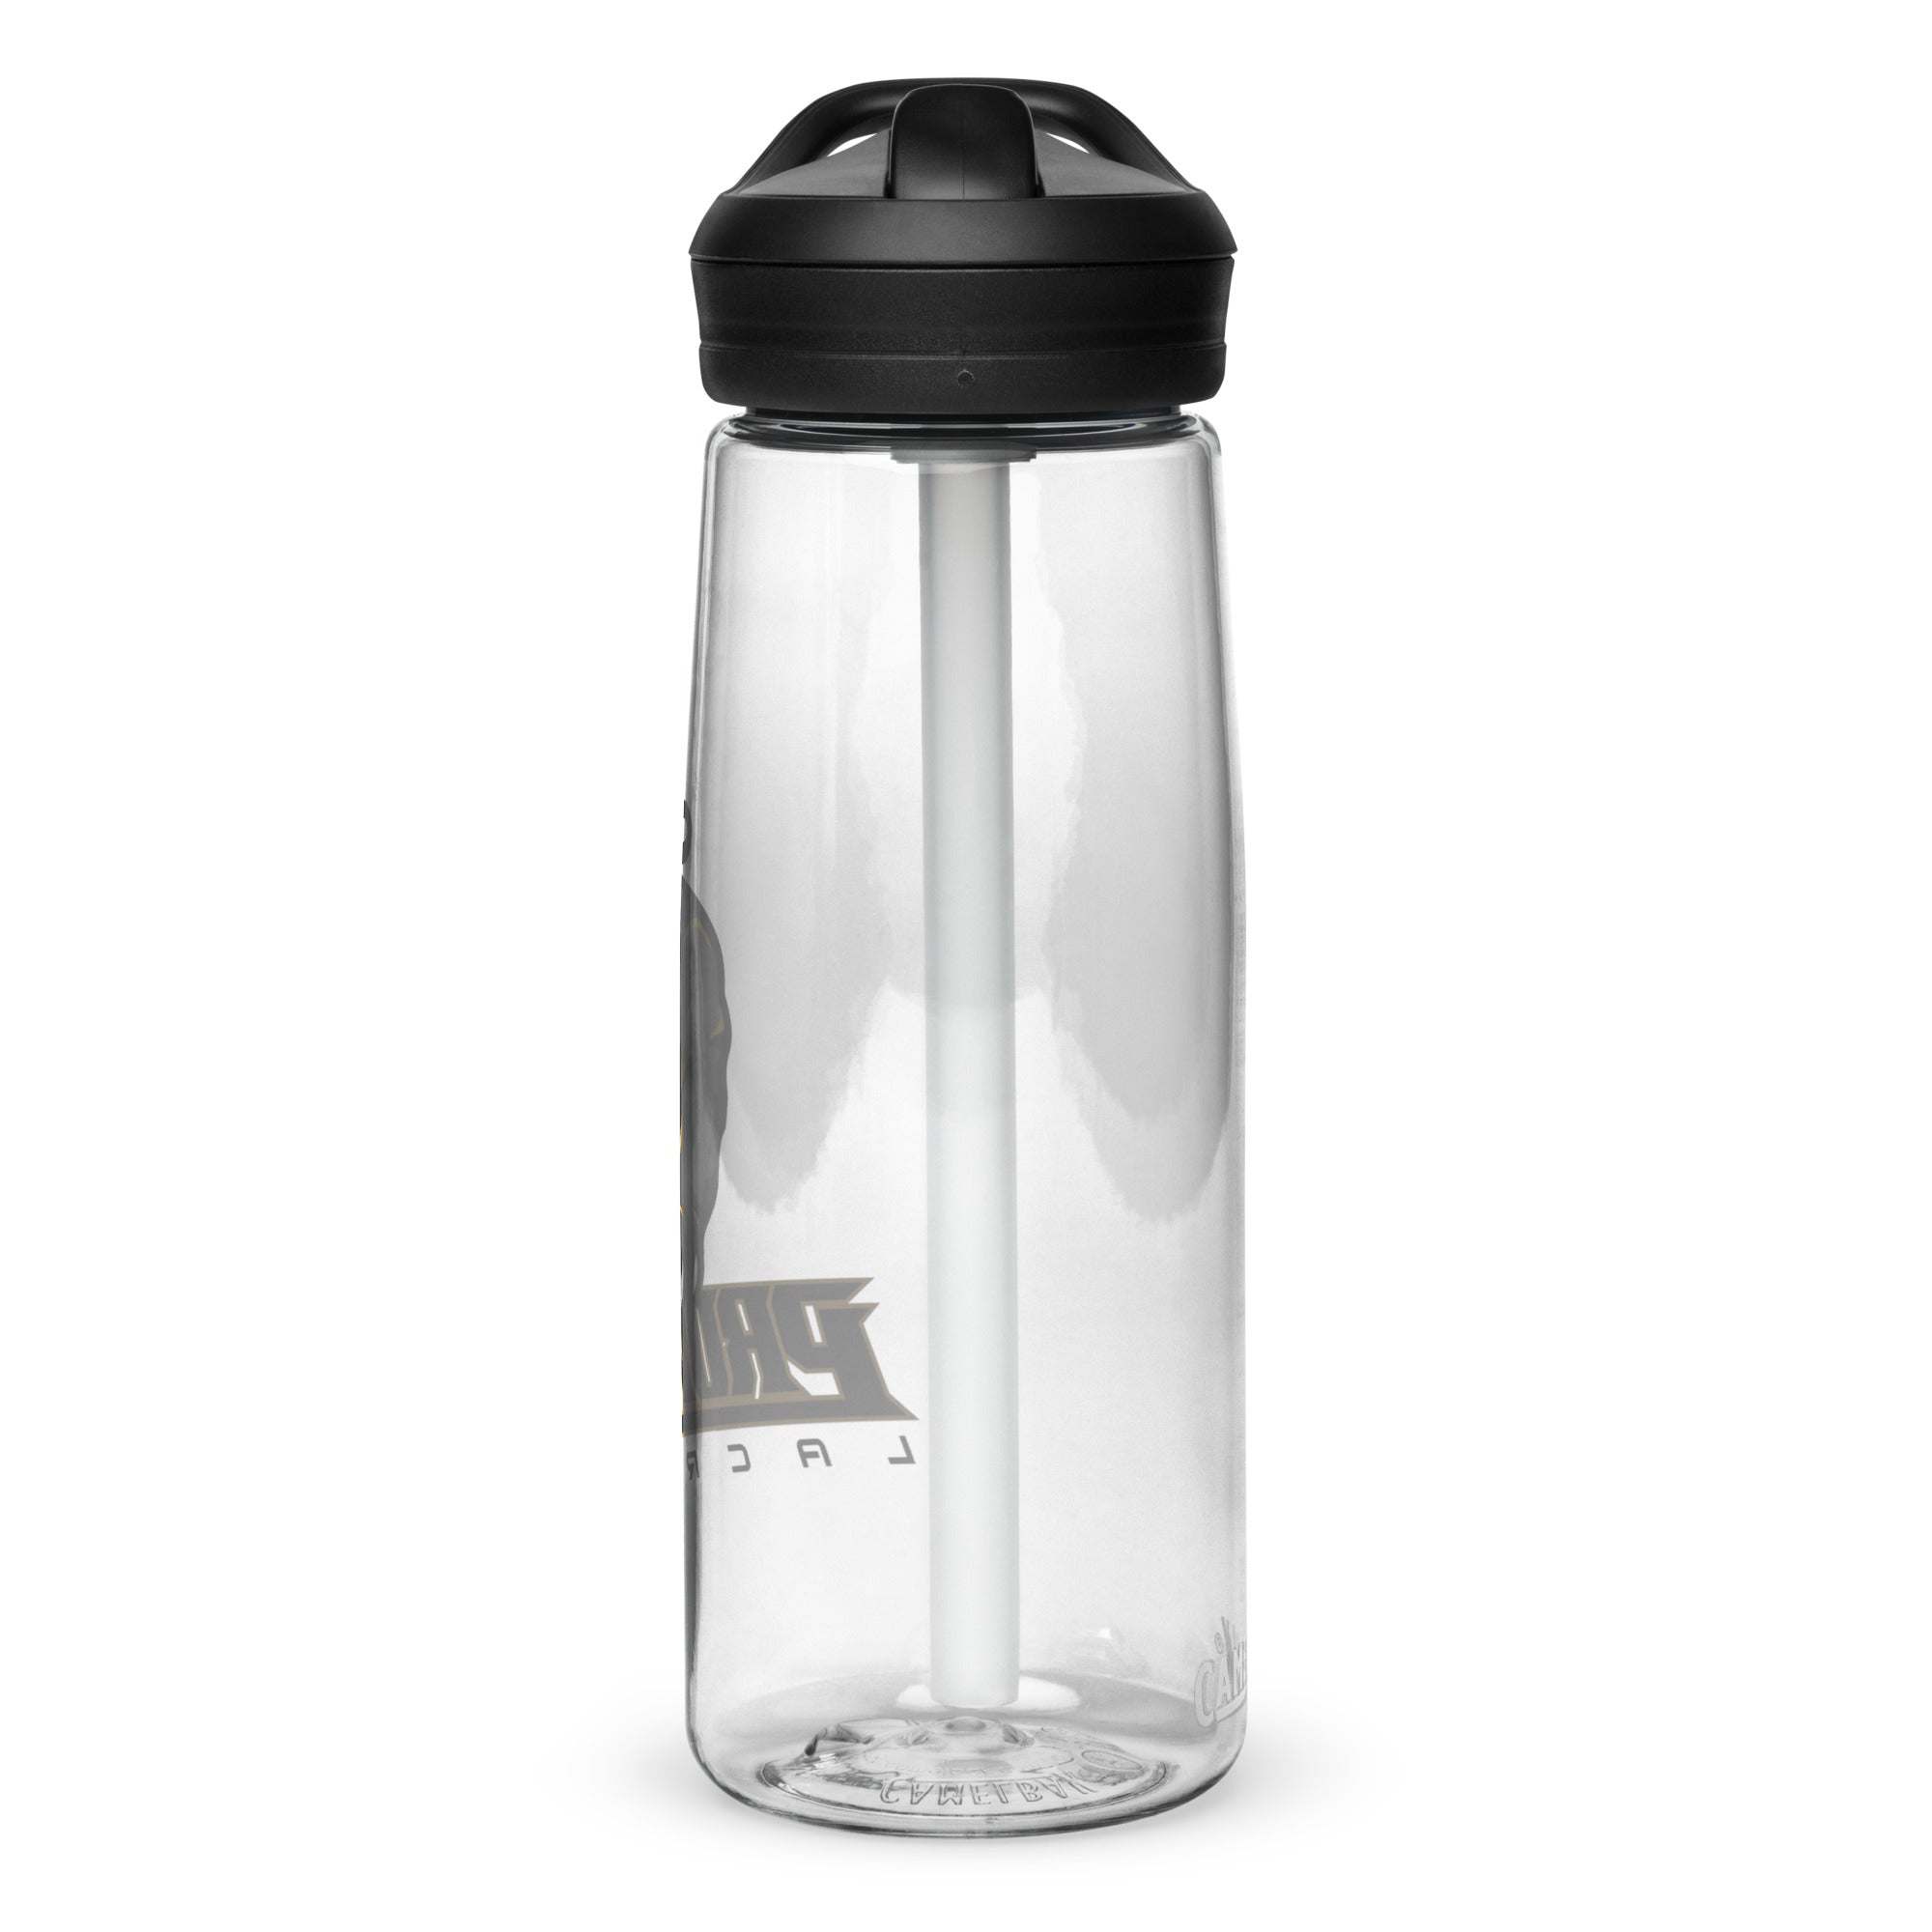 PL Sports water bottle